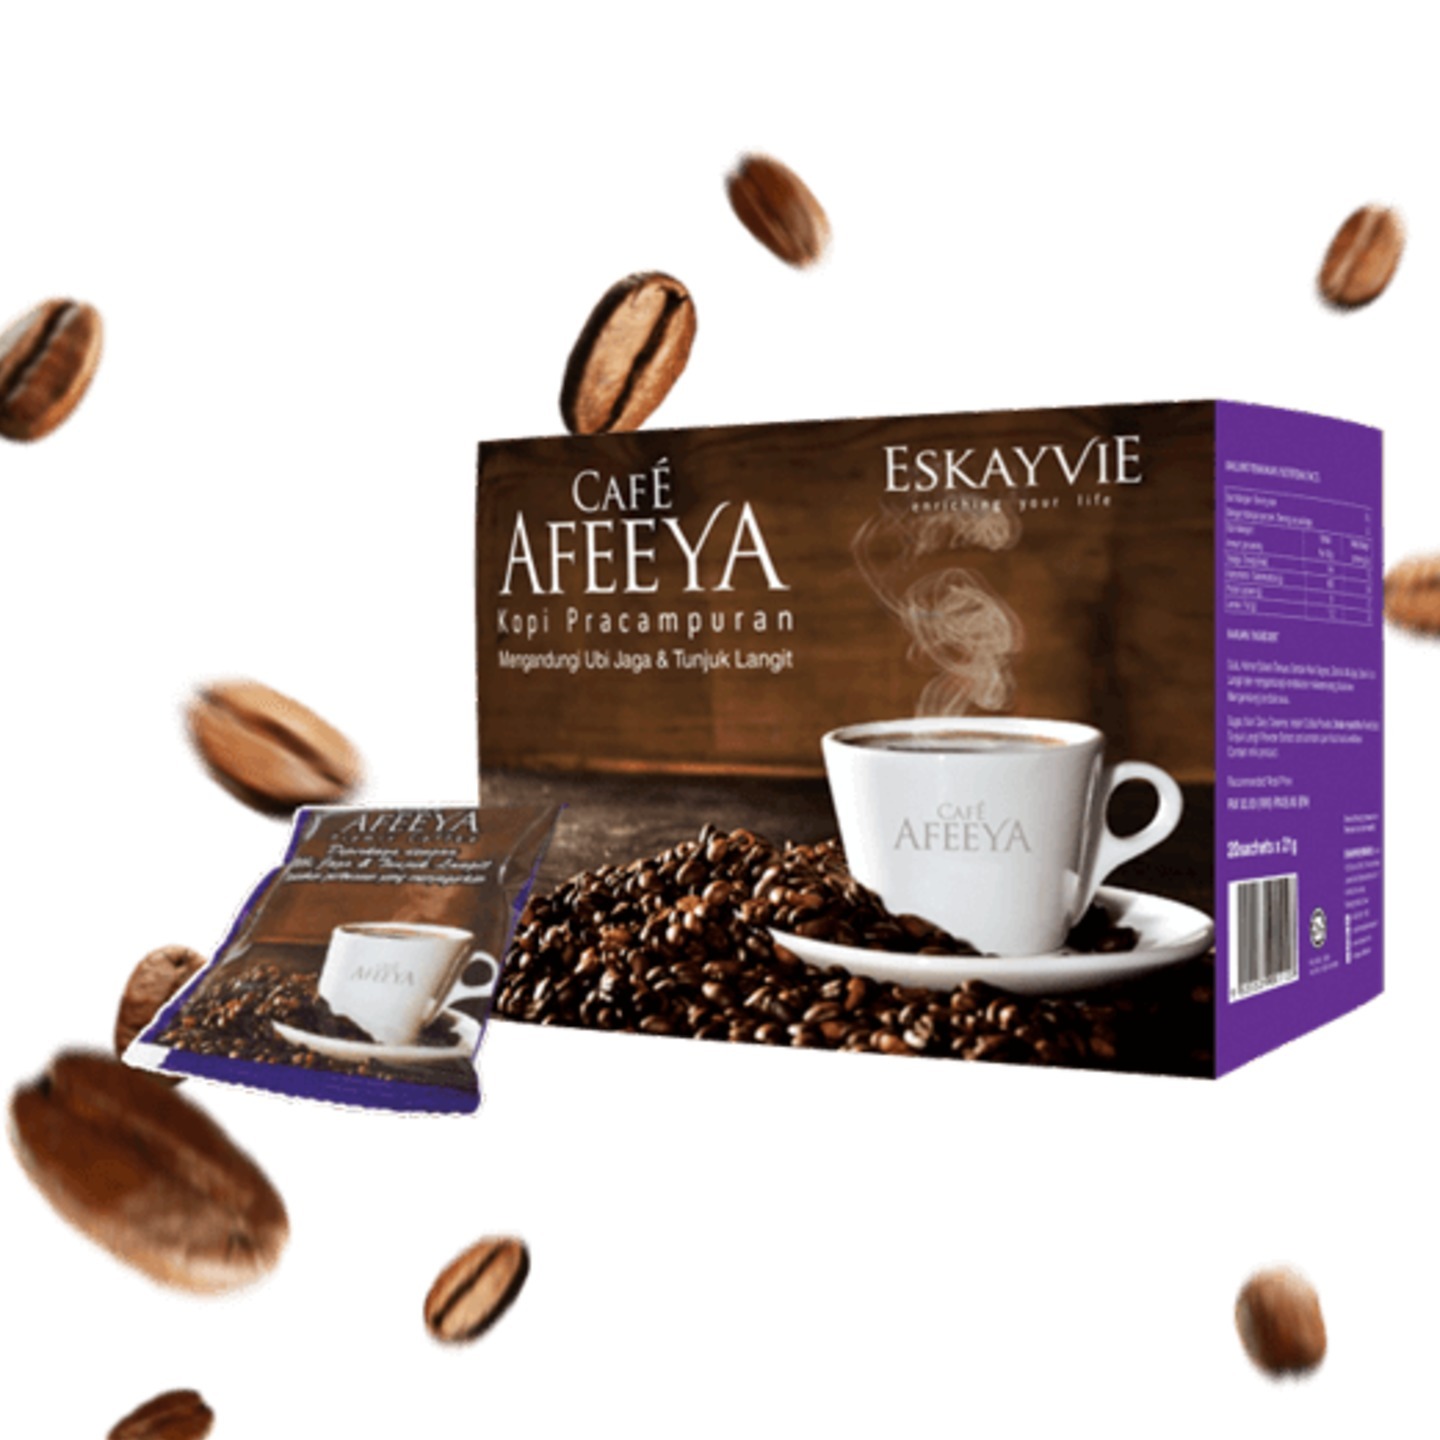 Eskayvie Afeeya Caf